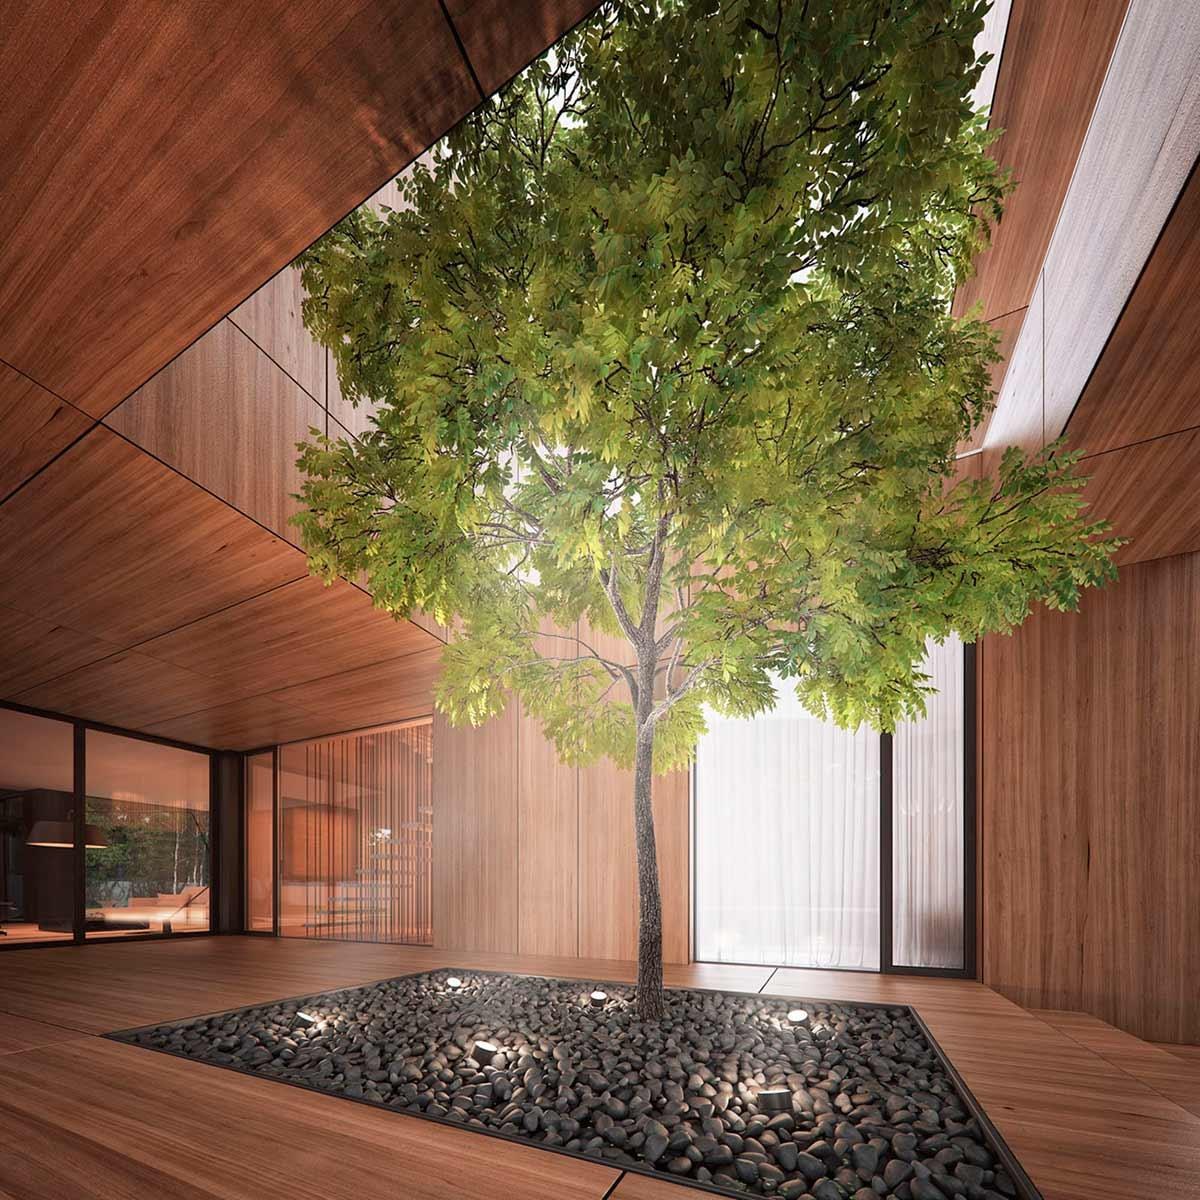 Дерево в интерьере: 45 примеров отделки стен